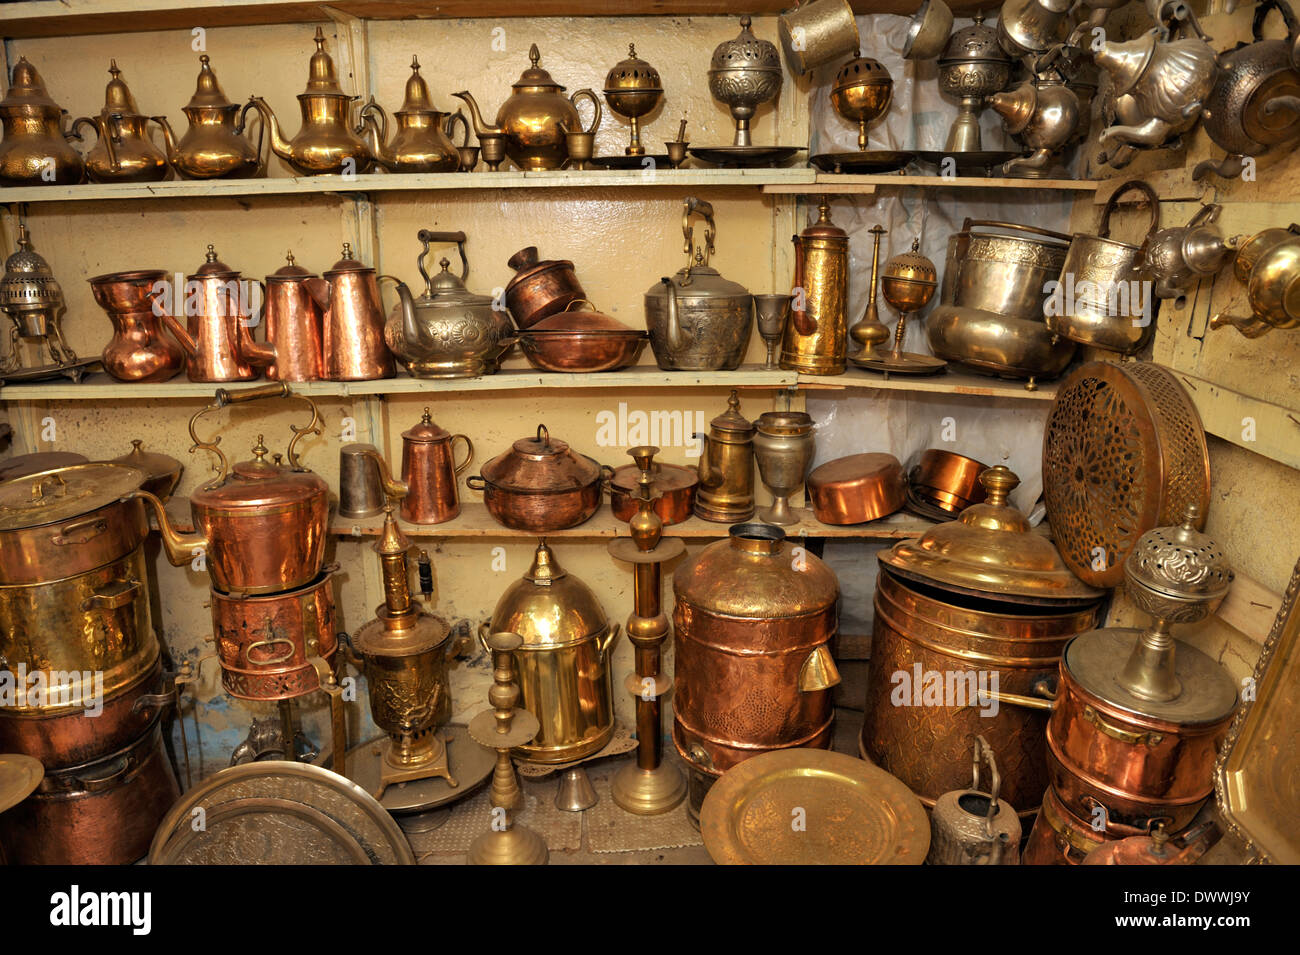 Lavoro di metallo, teiere, lampade, pentole, vassoi accanto al workshop nel souk di Marrakech, Marocco, Africa del Nord Foto Stock